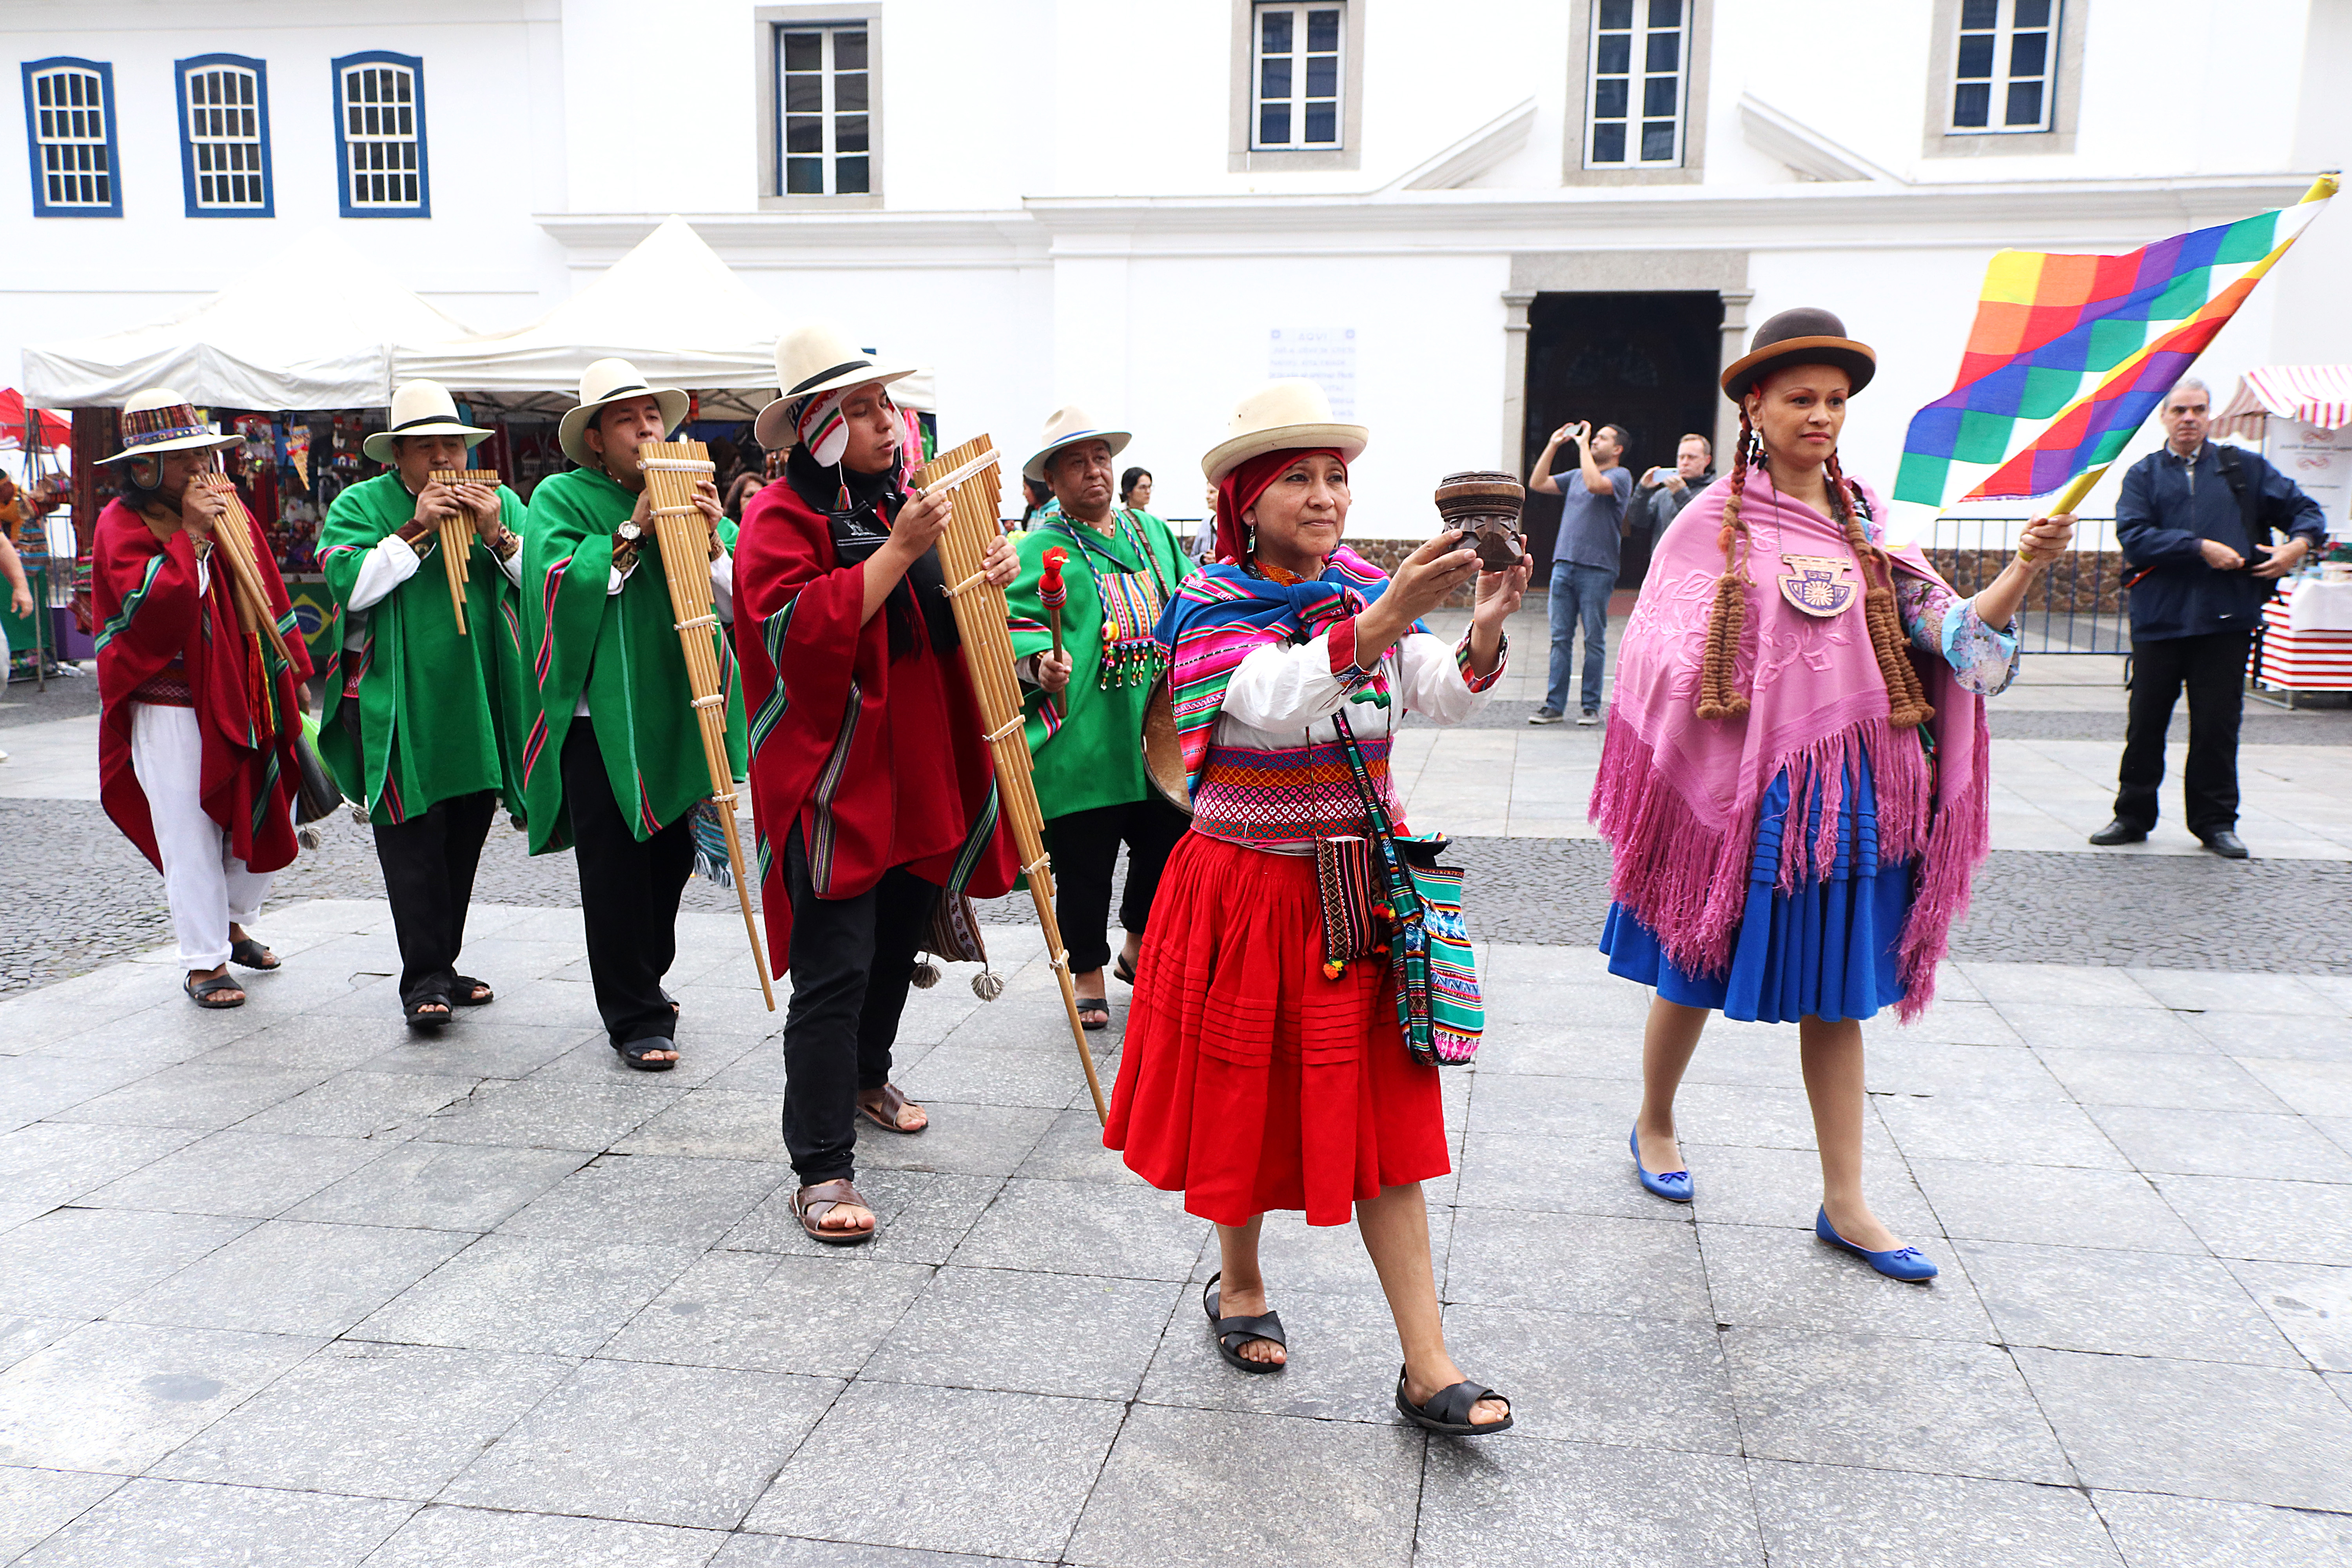 Grupo musical peruano se apresenta na abertura no evento, com roupas coloridas e instrumentos típicos do país.